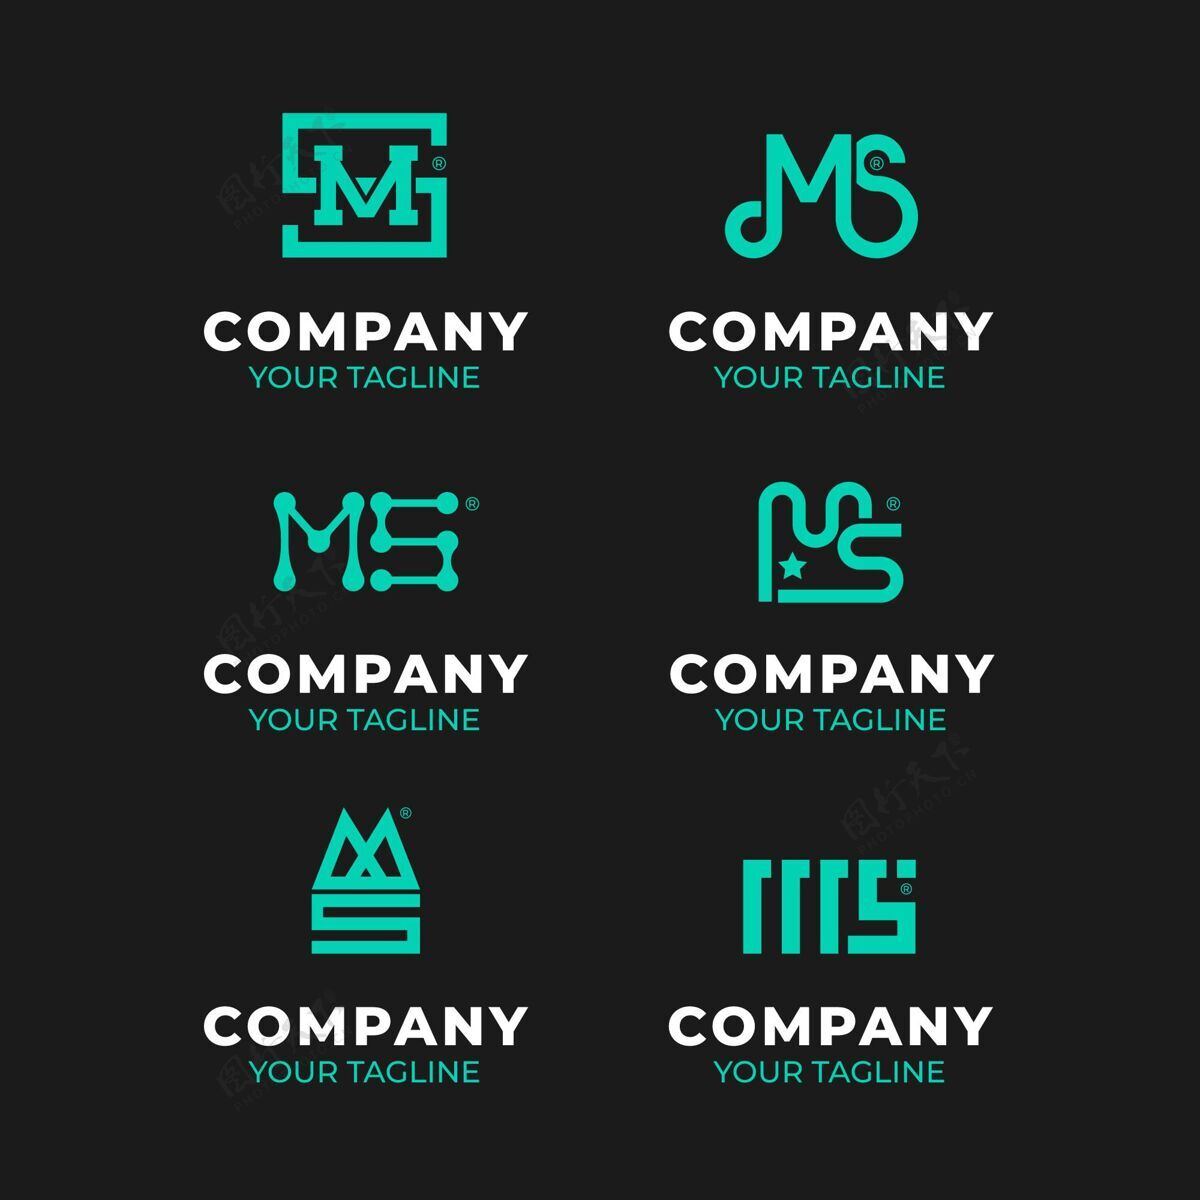 平面设计平面设计ms标志包企业标识企业公司